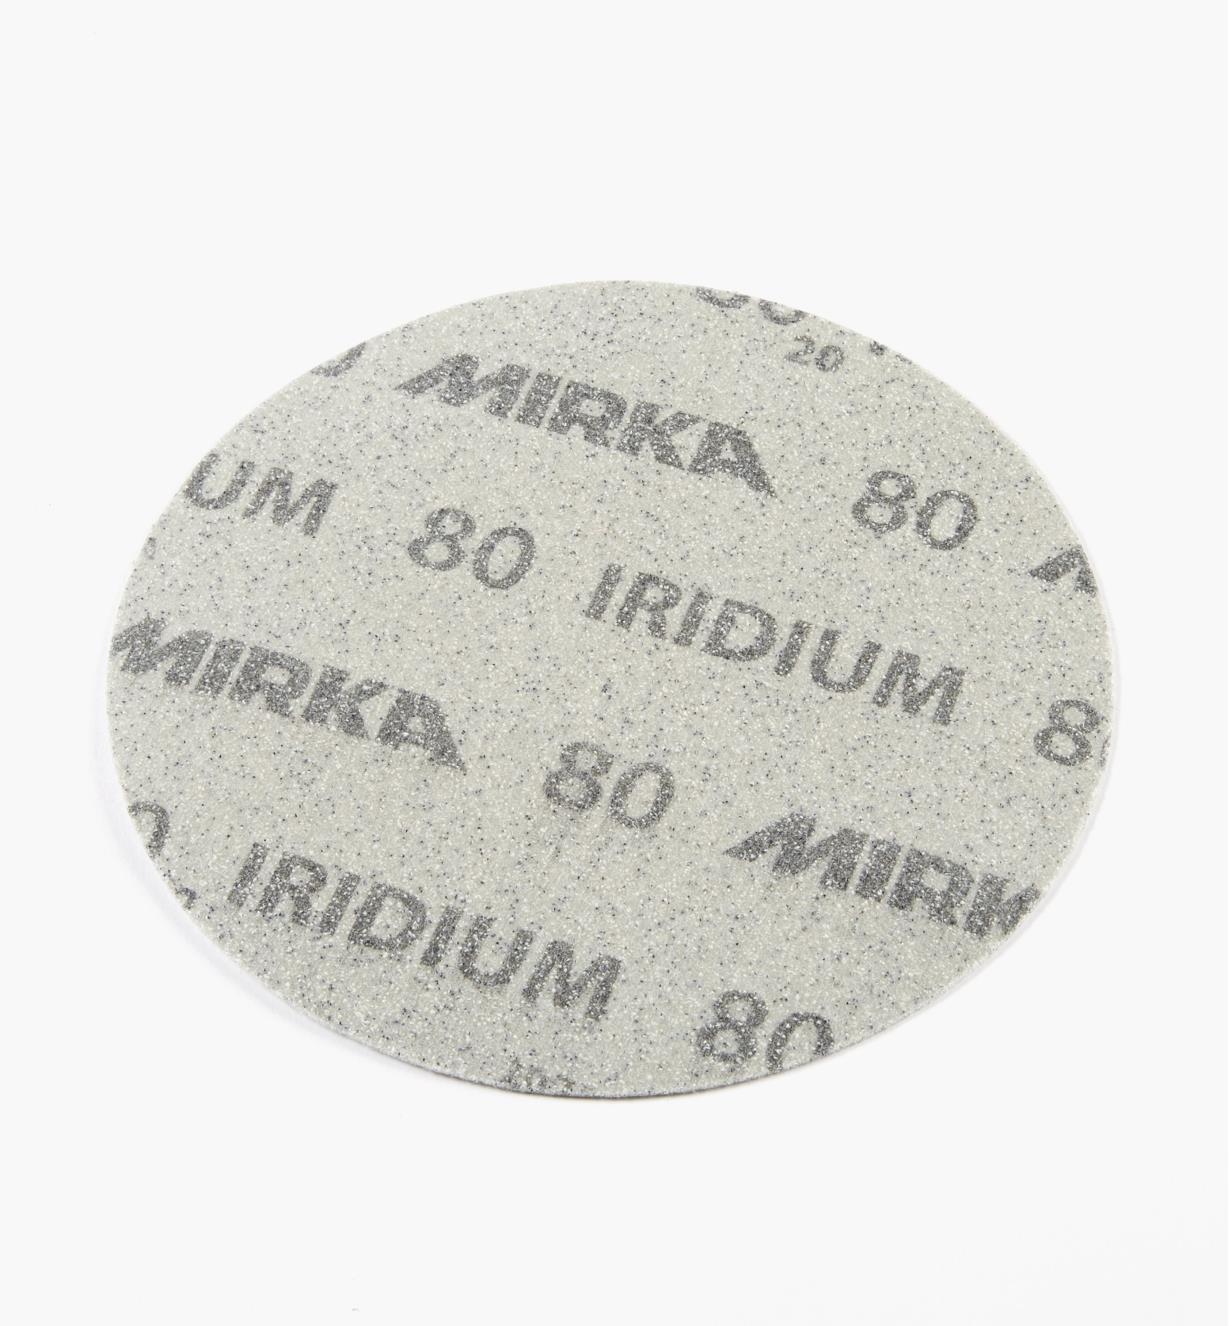 08K1741 - Disque abrasif autoagrippant Iridium, 6 po, sans trous, grain 80, l'unité